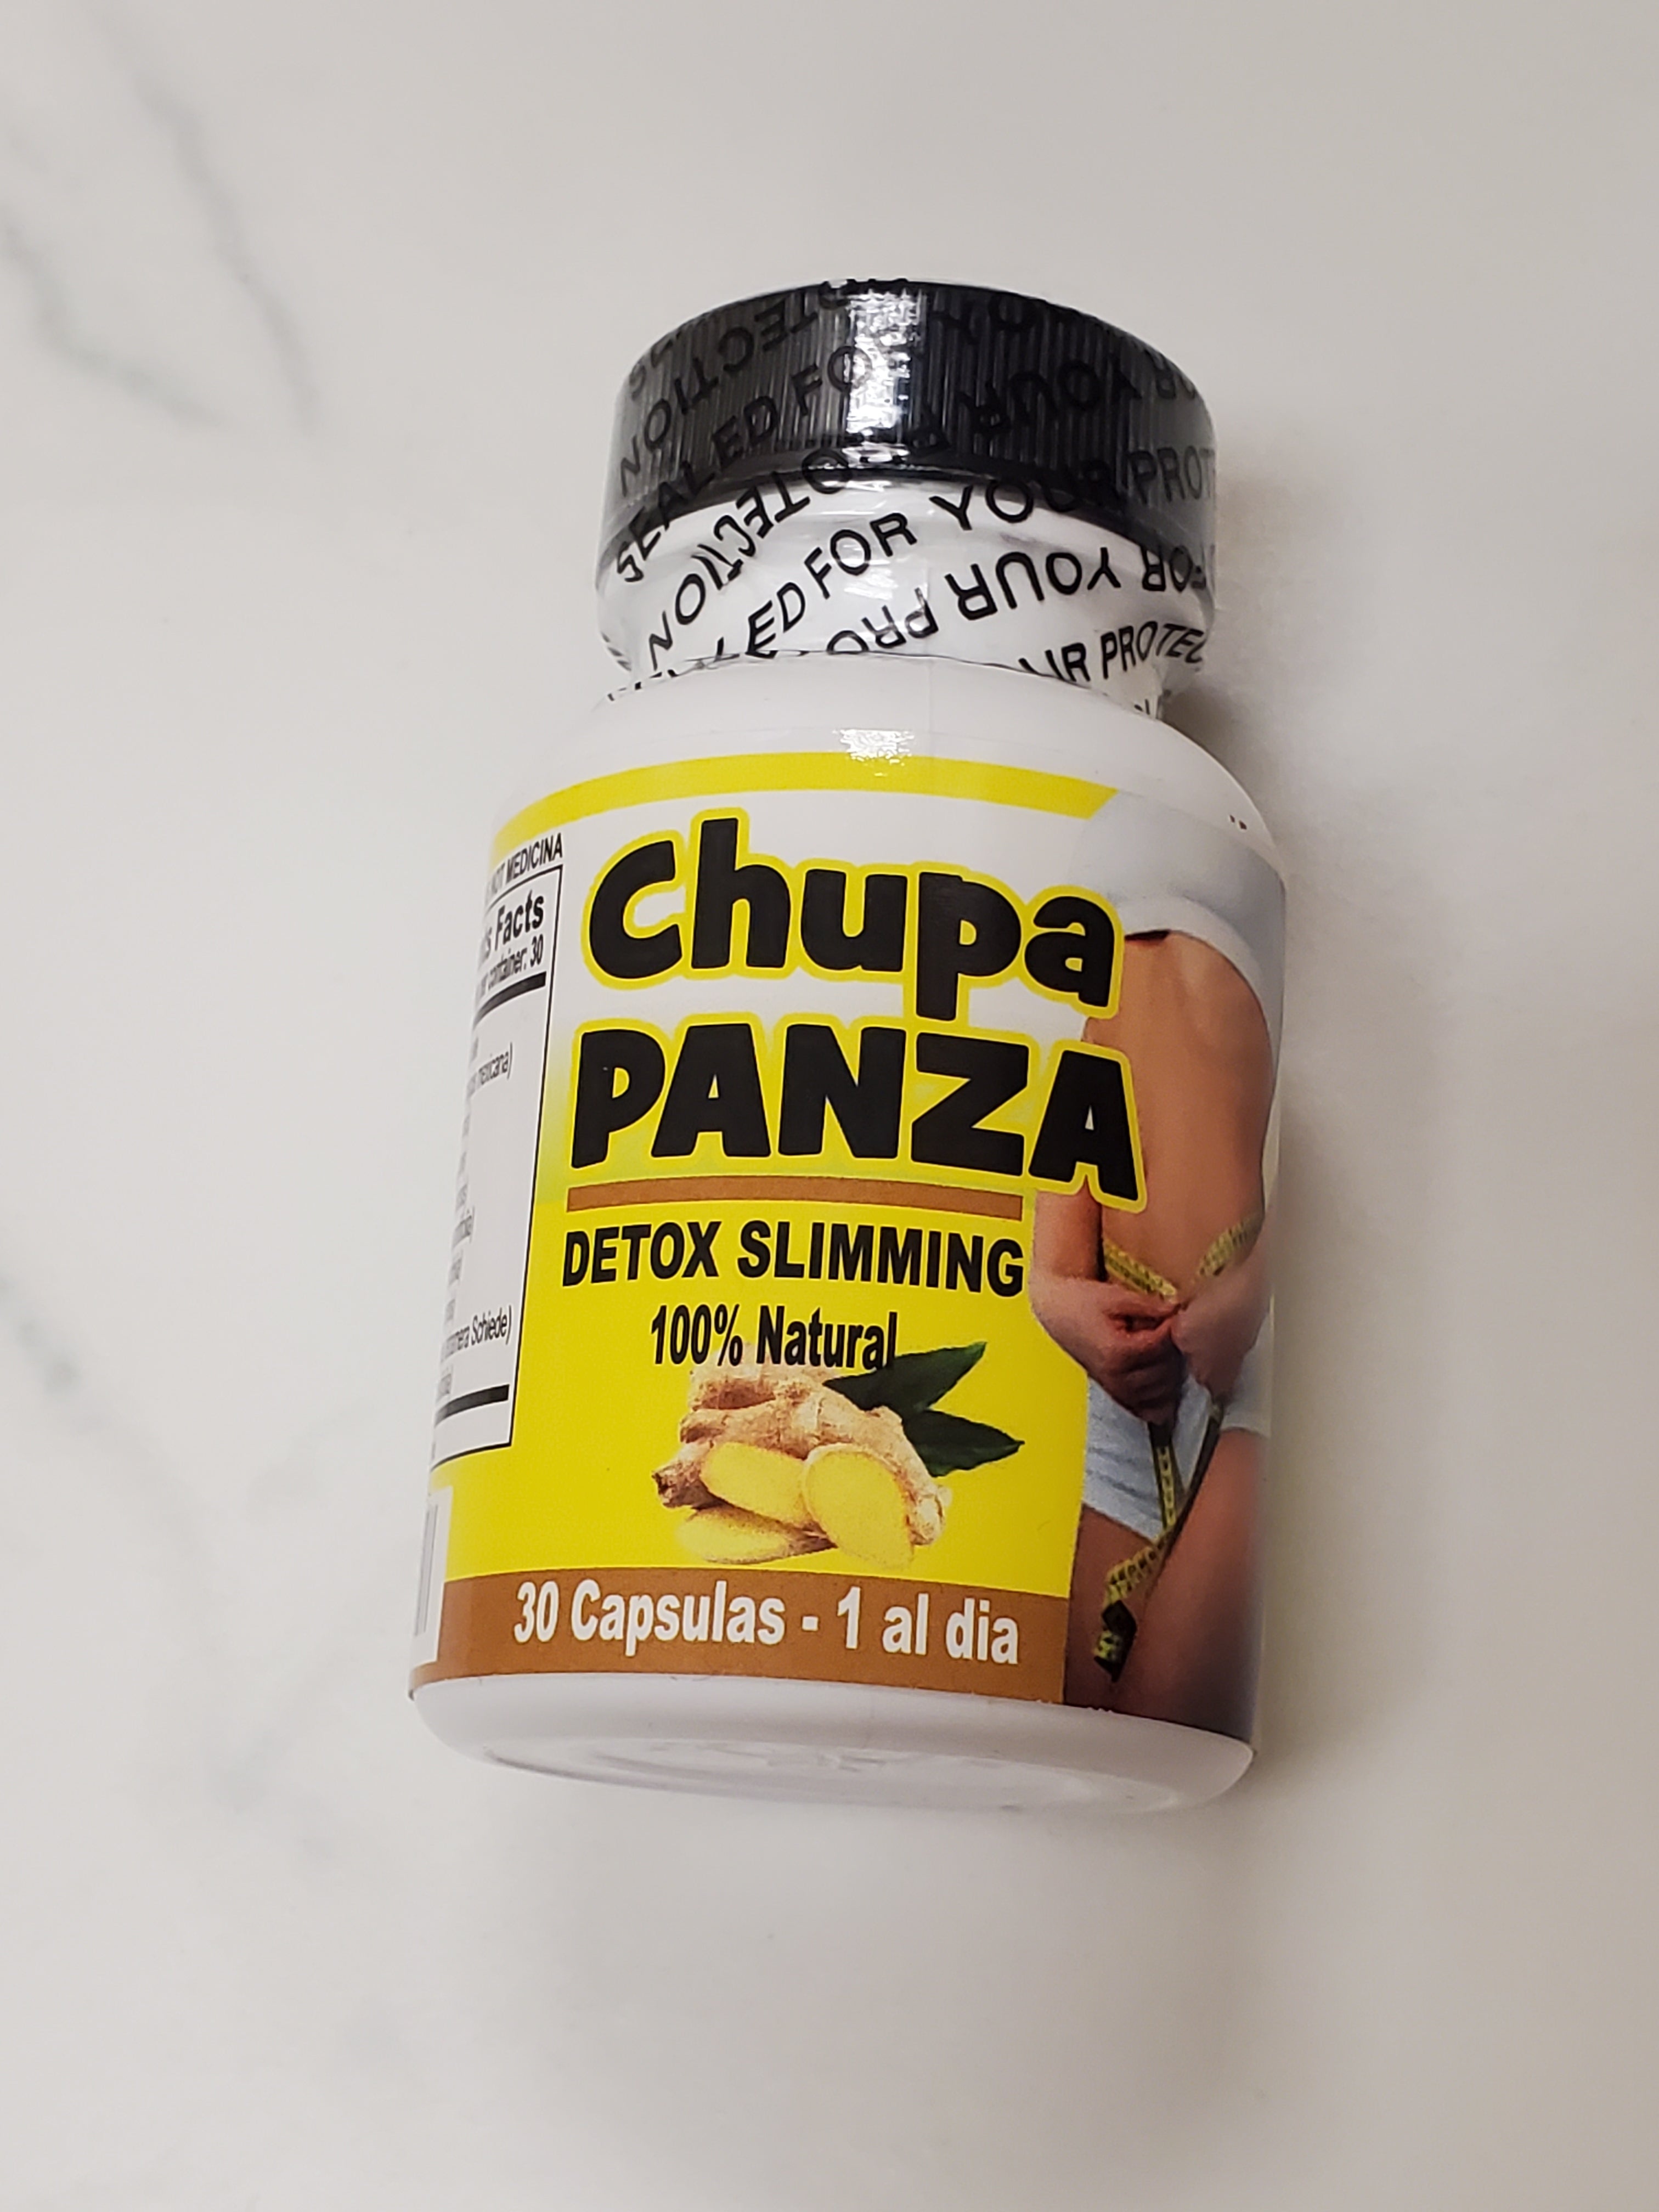 Week 1 of chupa panza ☕️ #chupapanza #chupapanzachallenge #chupapanzar